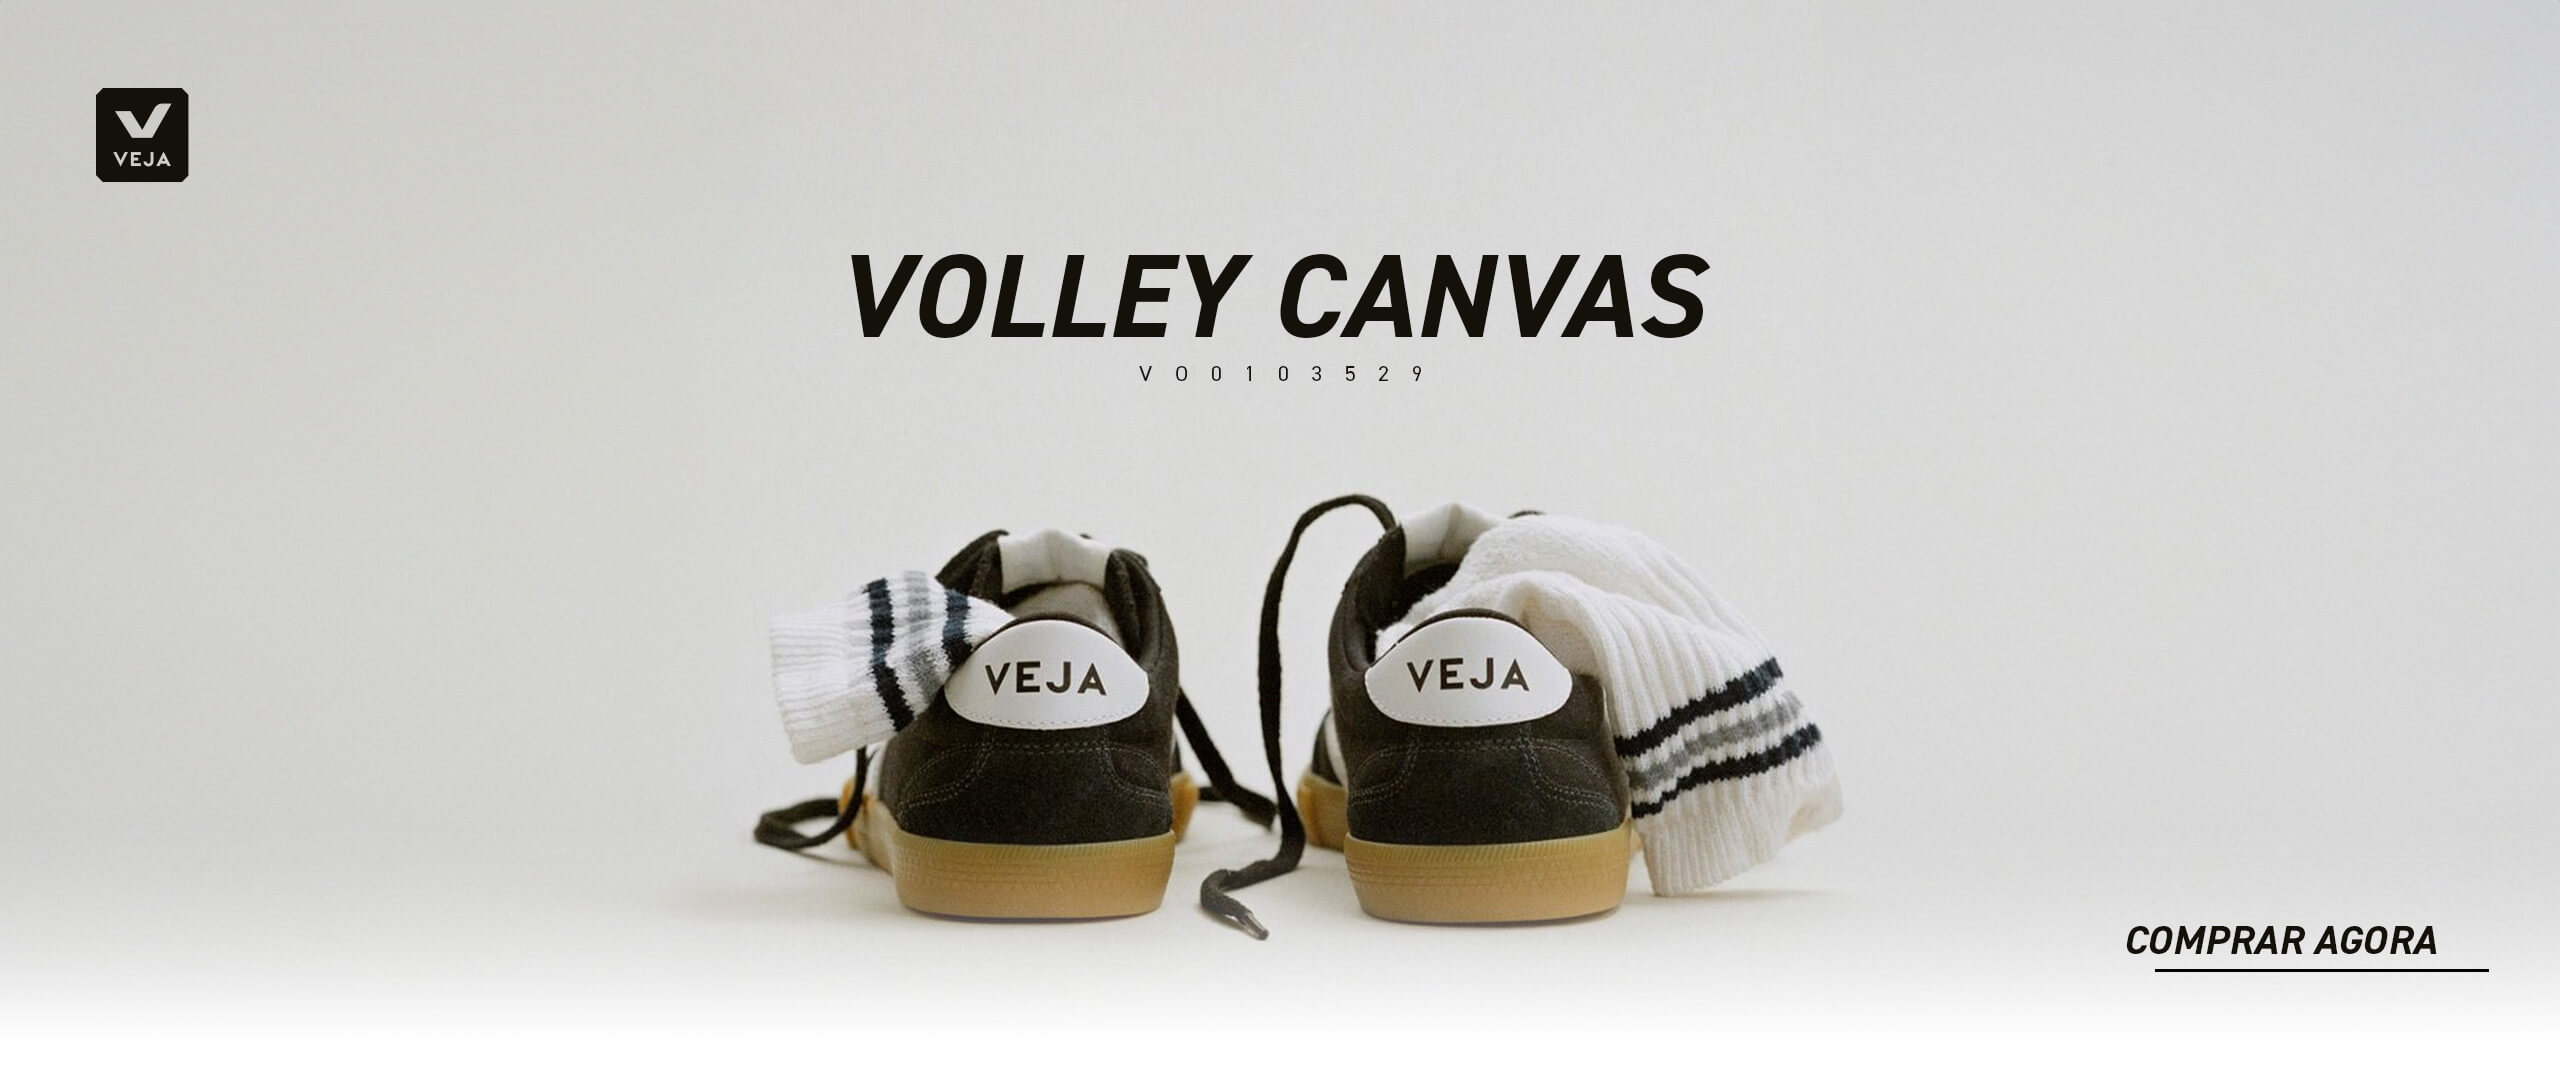 Veja Volley Canvas - VO0103529